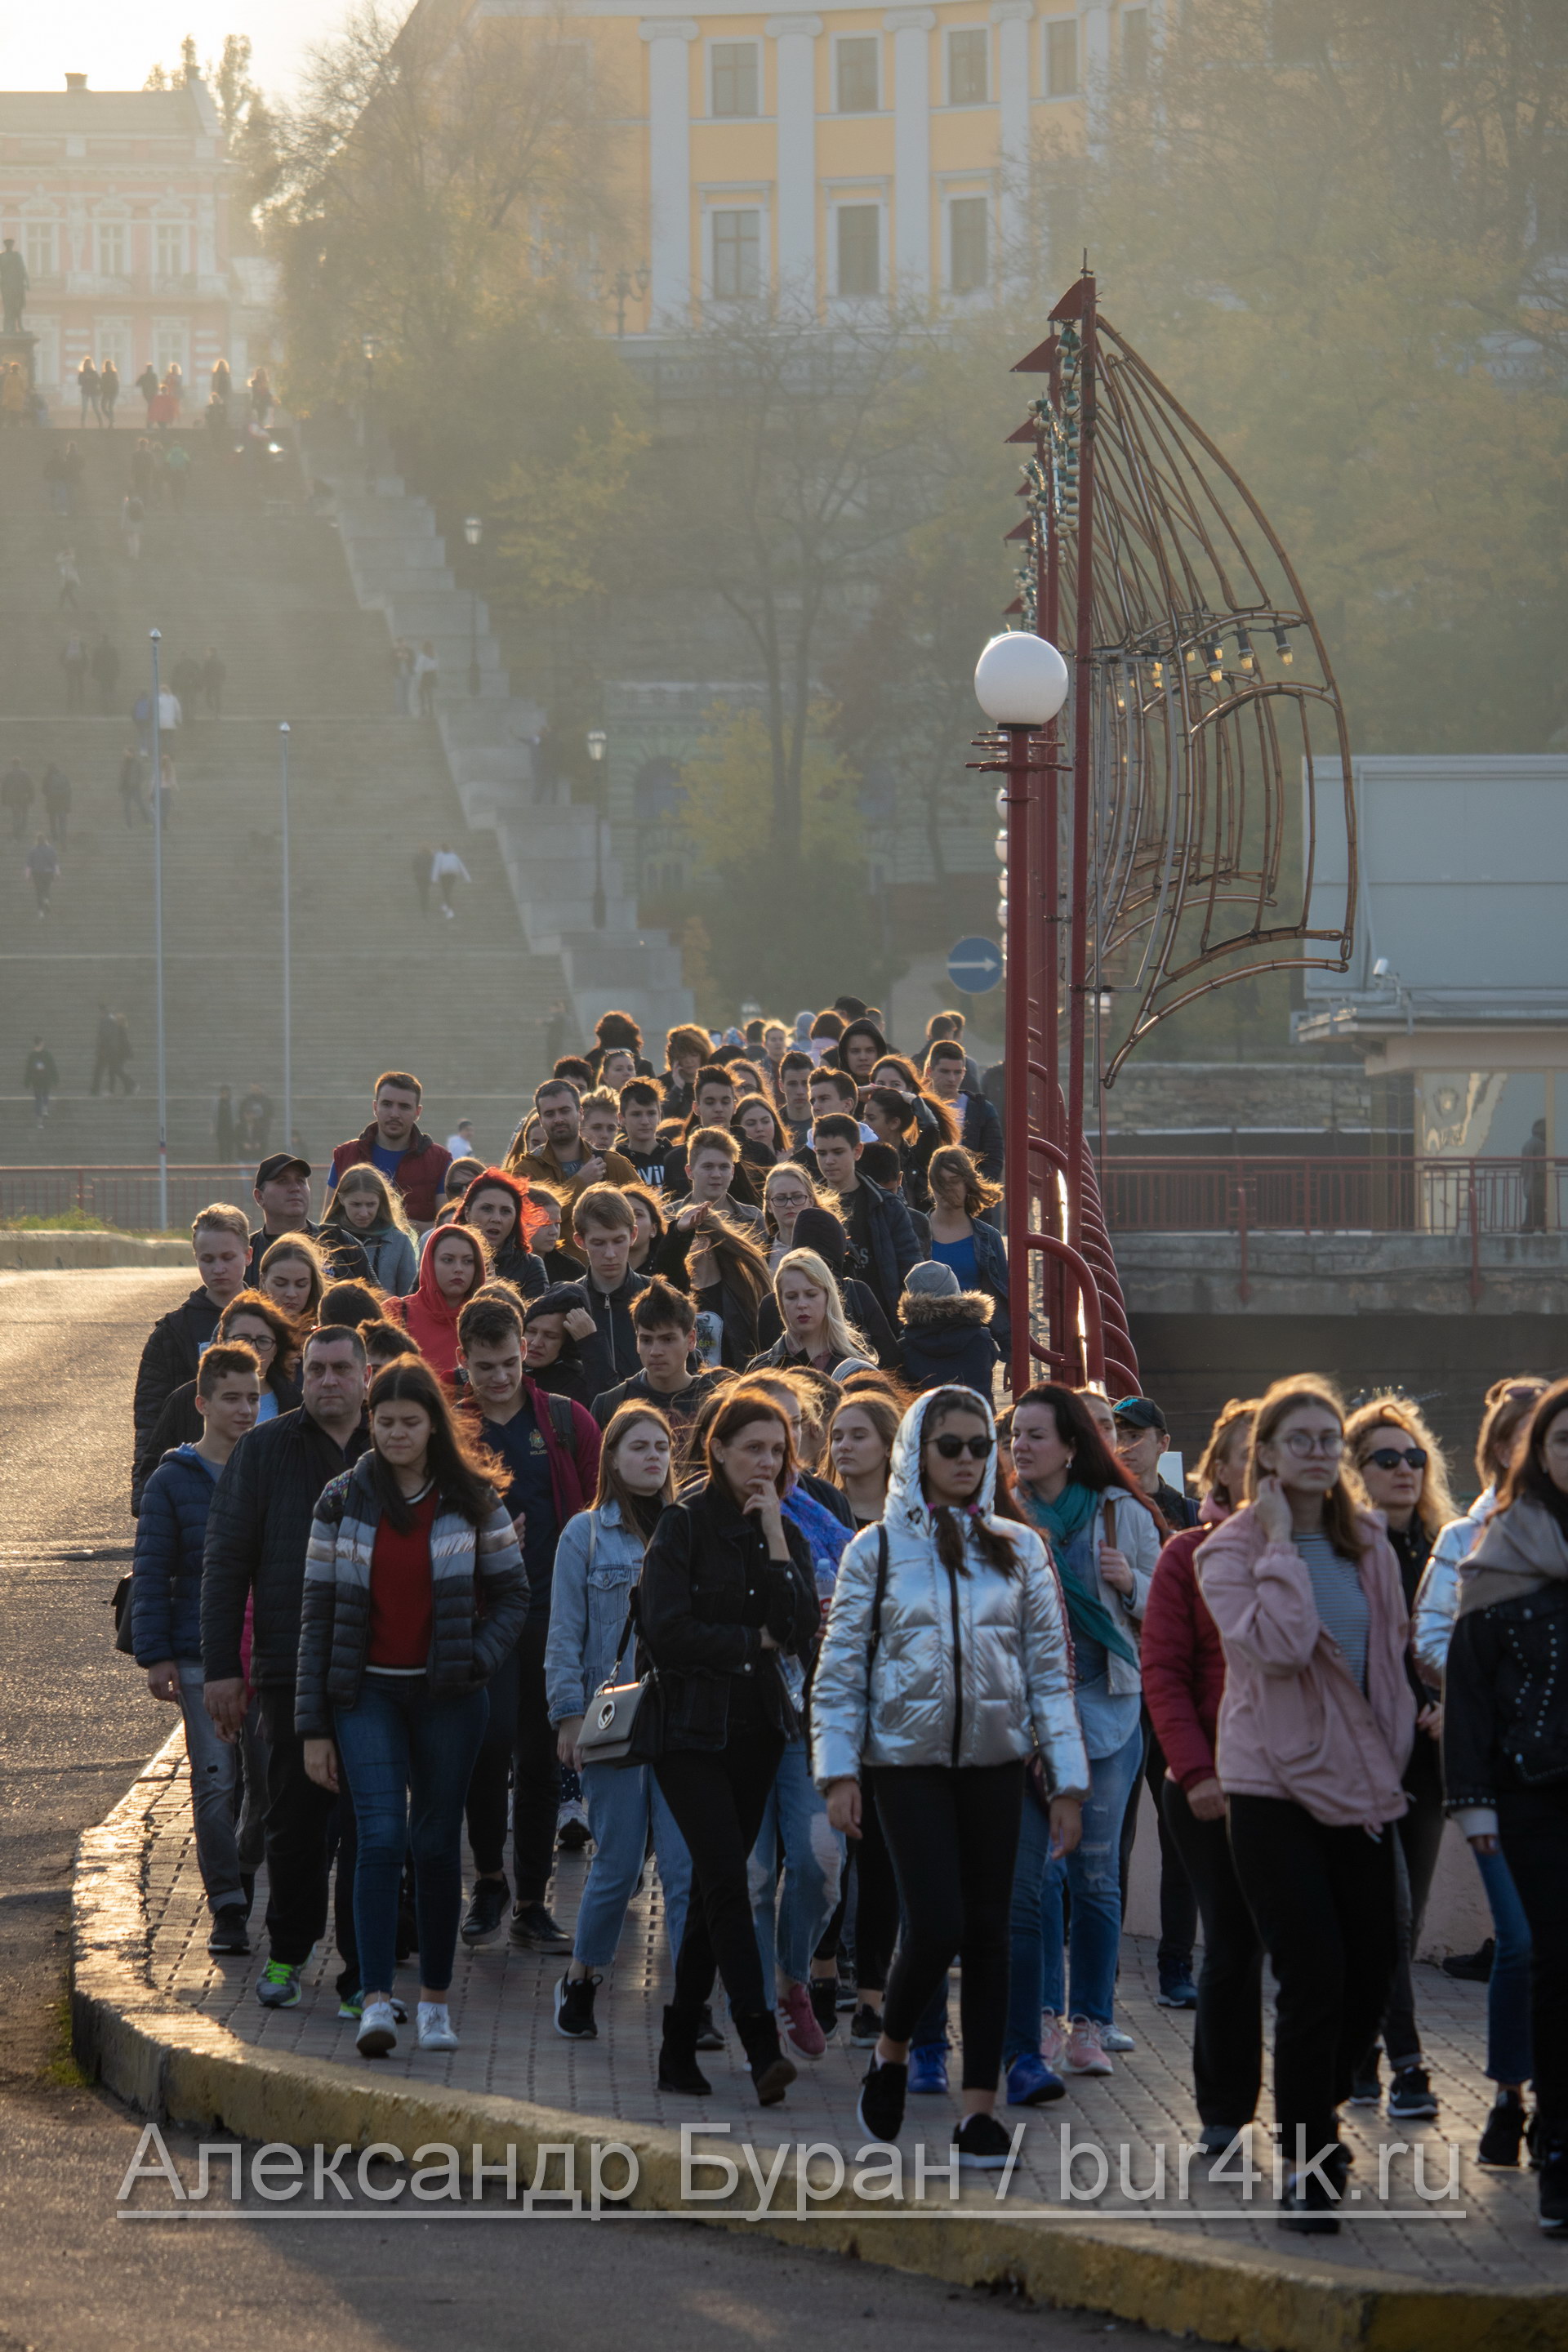 Толпа человек въезжает на территорию морского порта на экскурсию - Украина, Одесса, 09,11,2019